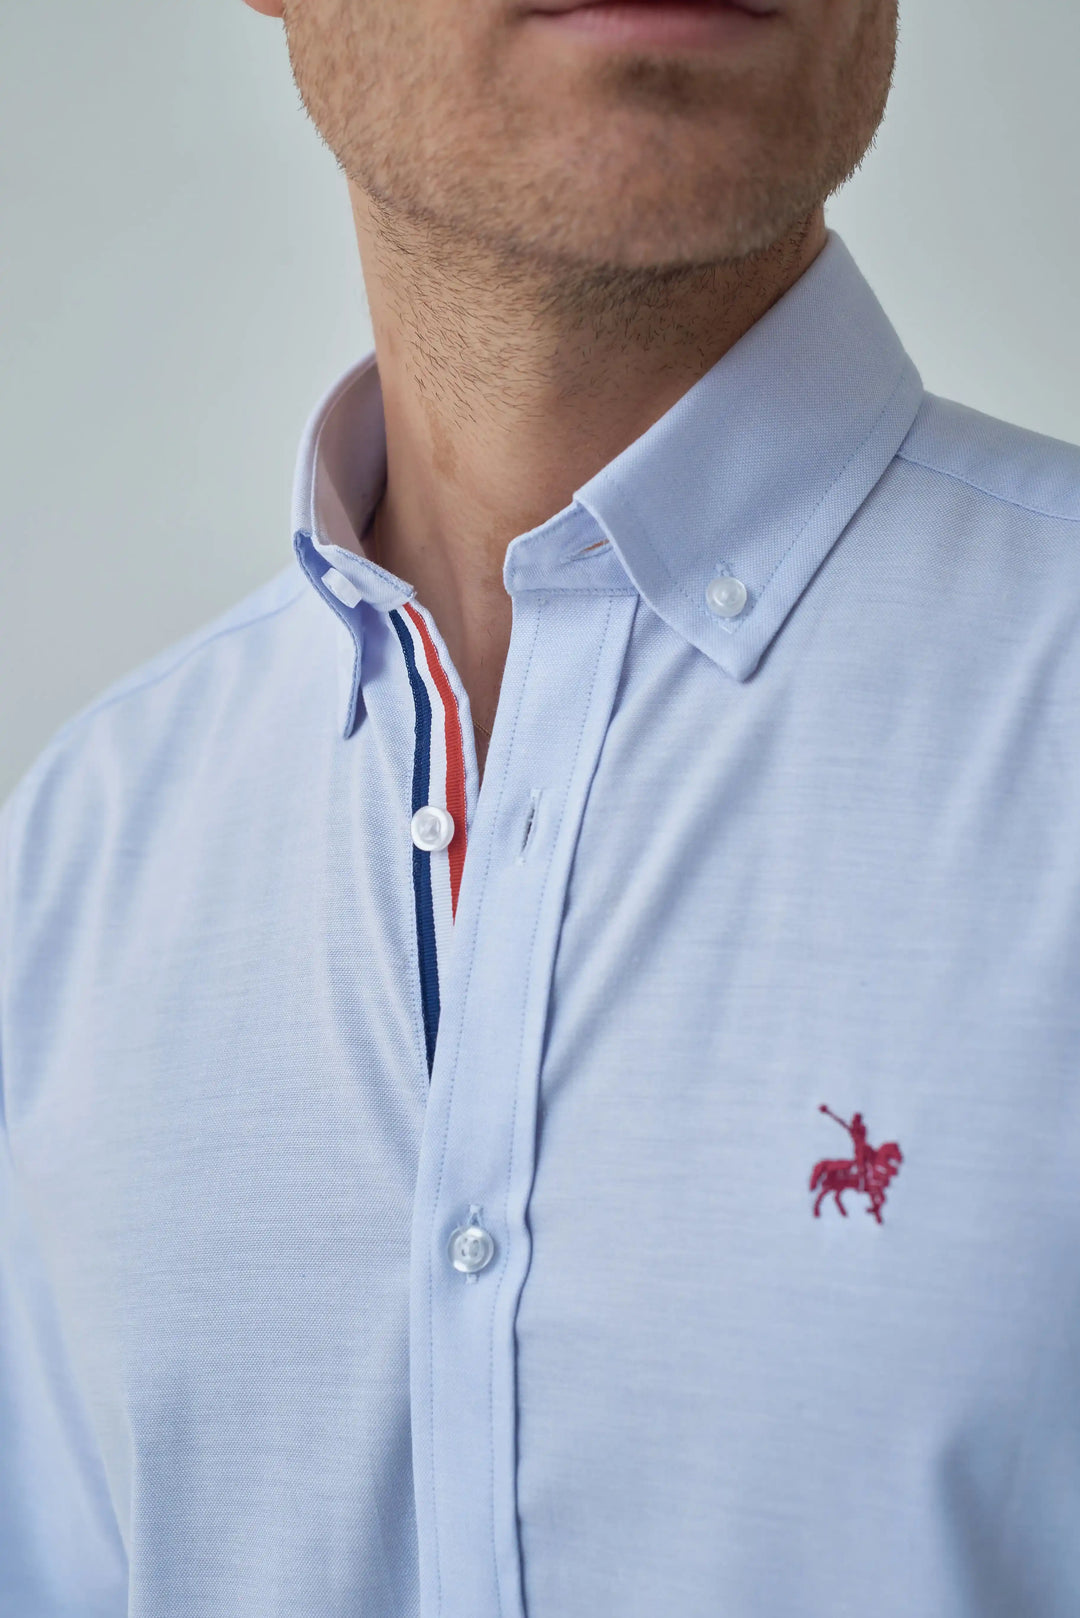 Camisa azul claro para hombre. Camisa con detalles de colores bandera de Francia en el cuello. Logo bordado rojo.